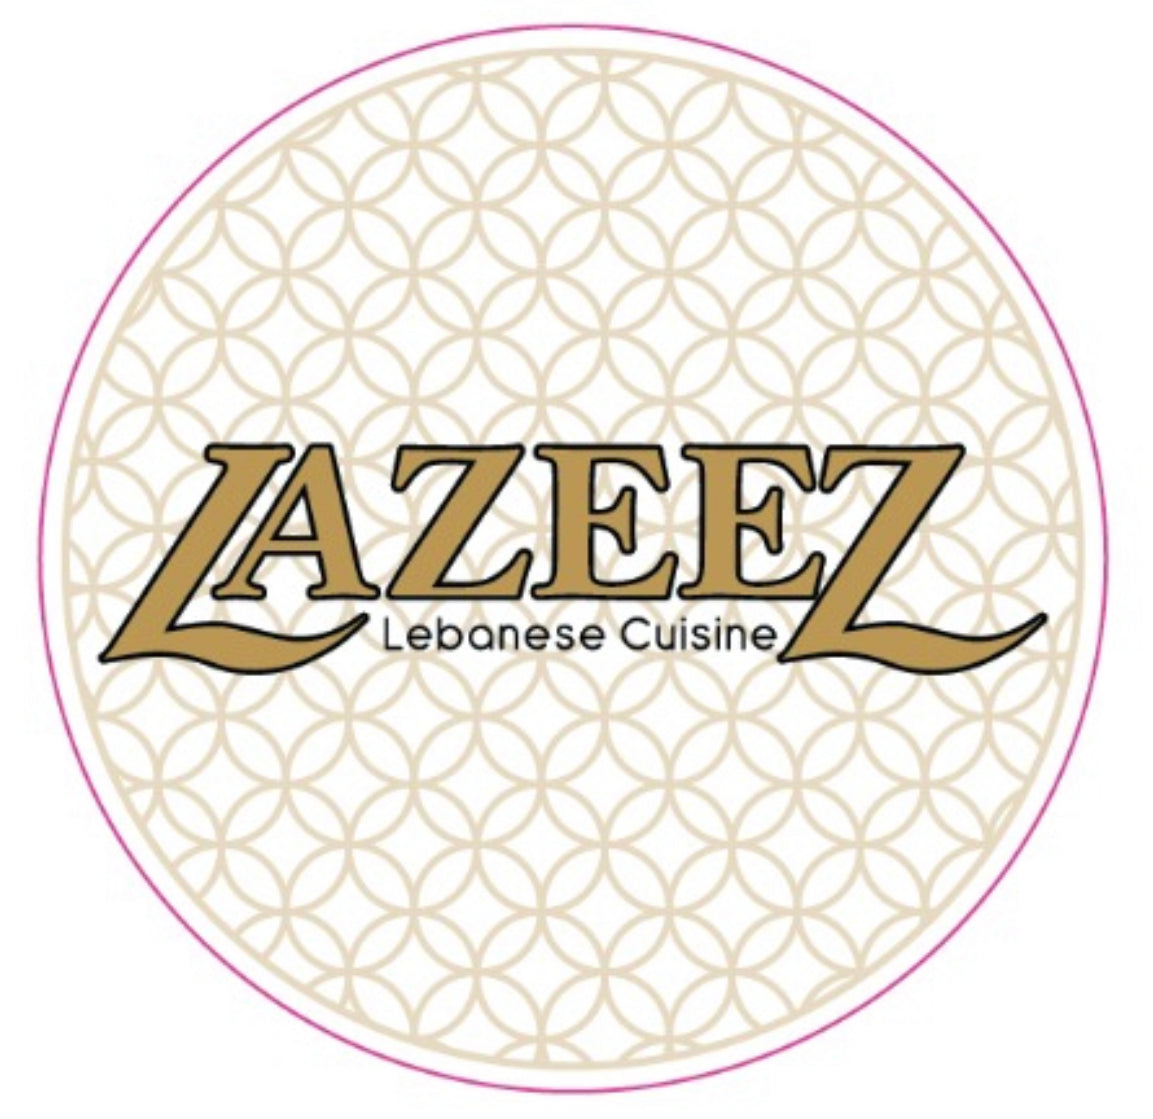 Lazeez Catering